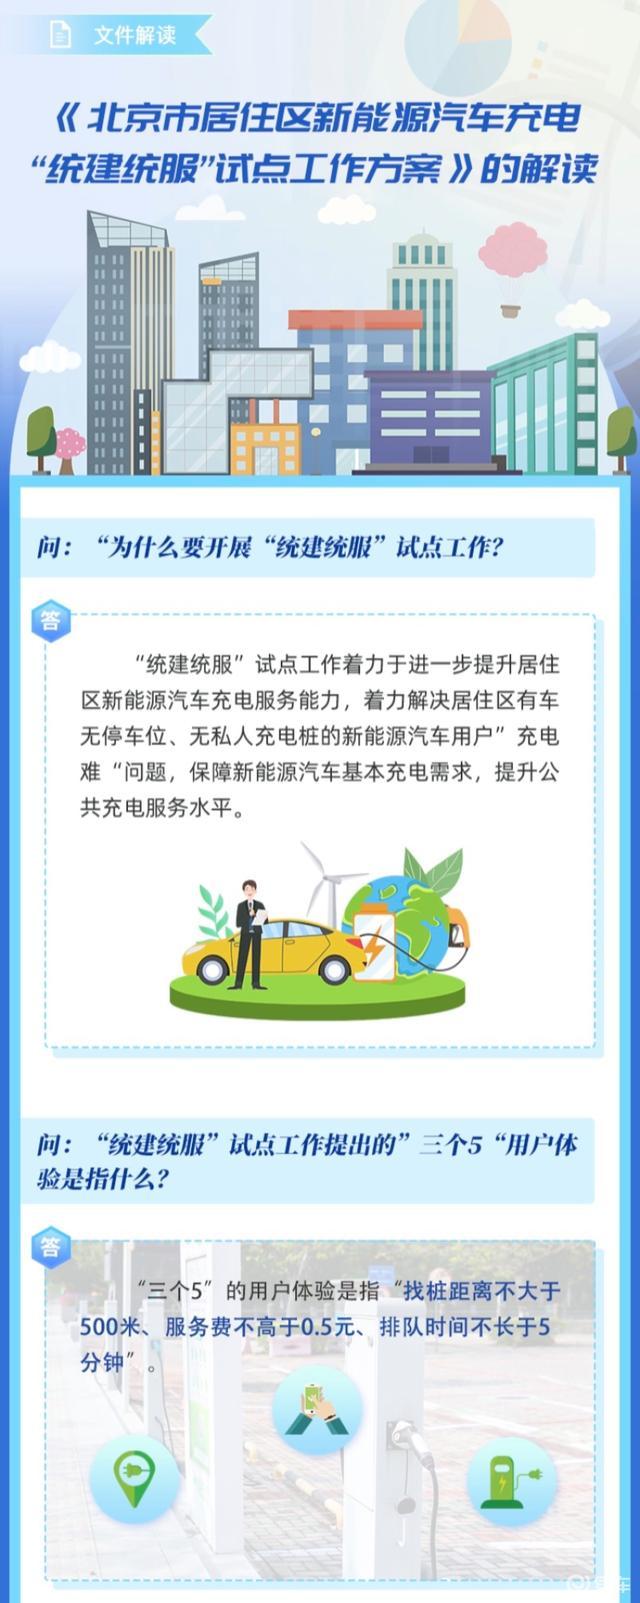 北京将实现新能源汽车充电找桩距离不大于500米